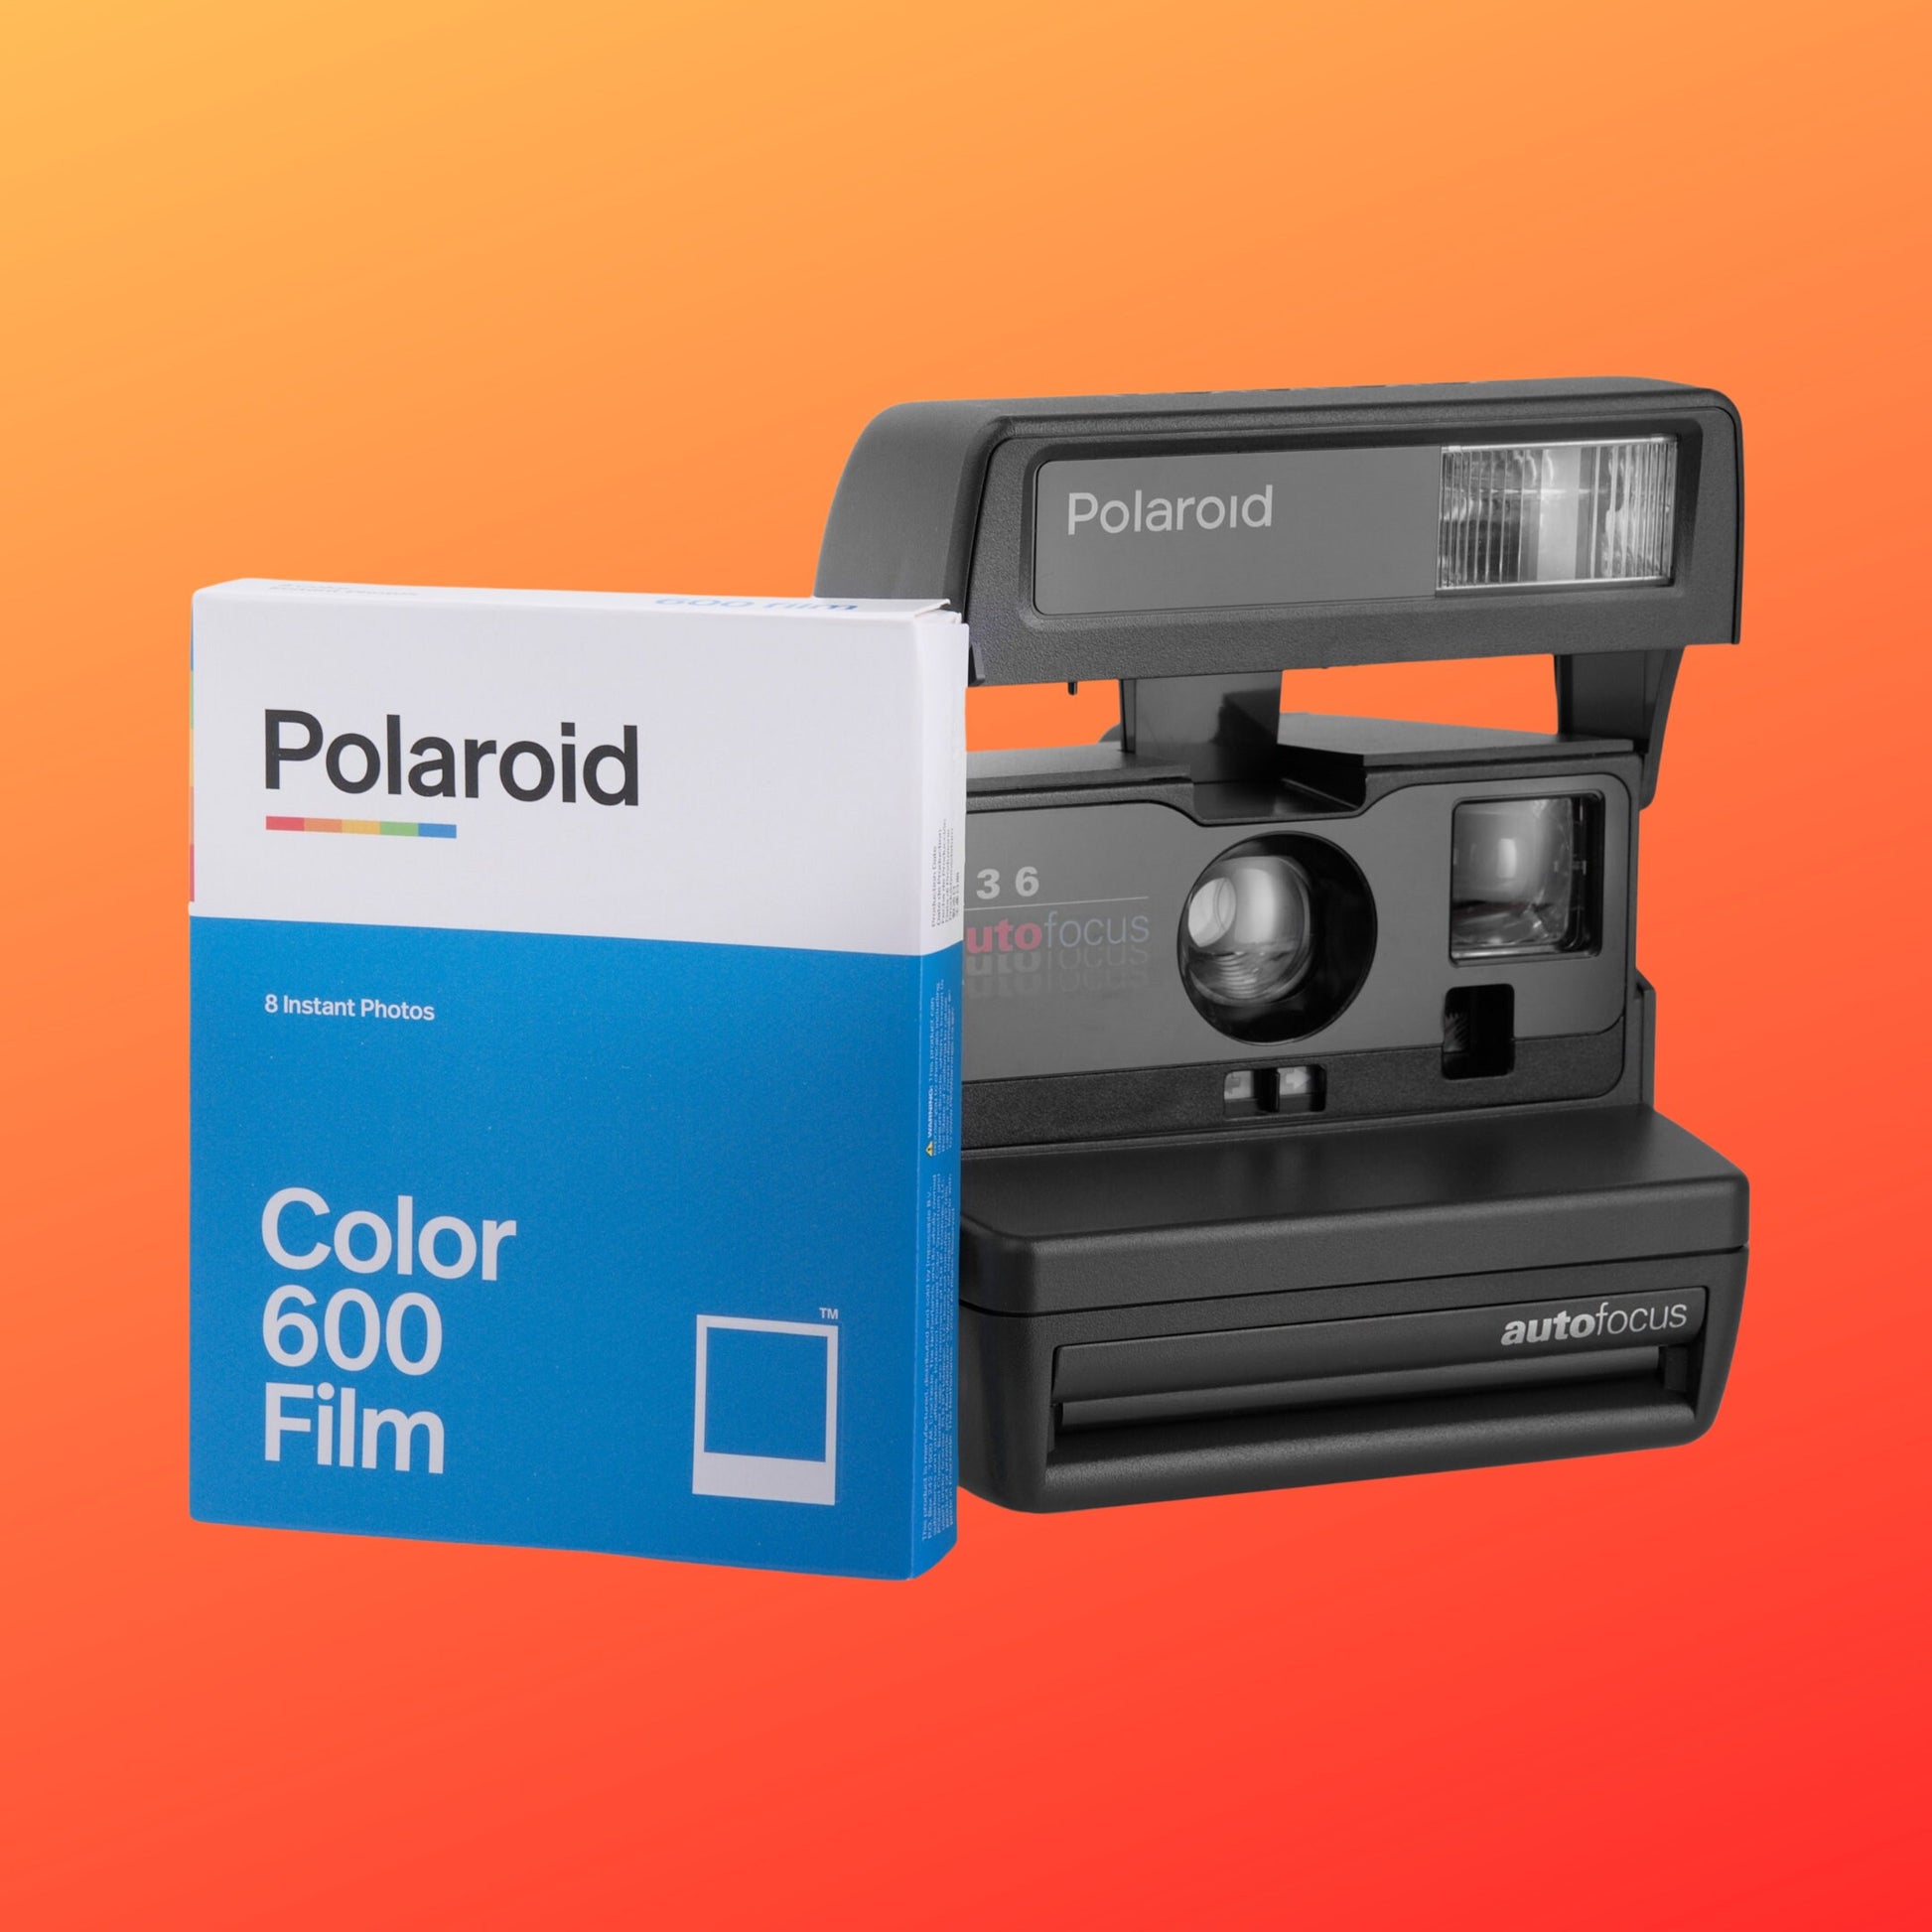 Polaroid Camera 636 Autofocus, Perfect Gift Film Camera, Film Camera for Beginners - Vintage Polaroid Instant Cameras